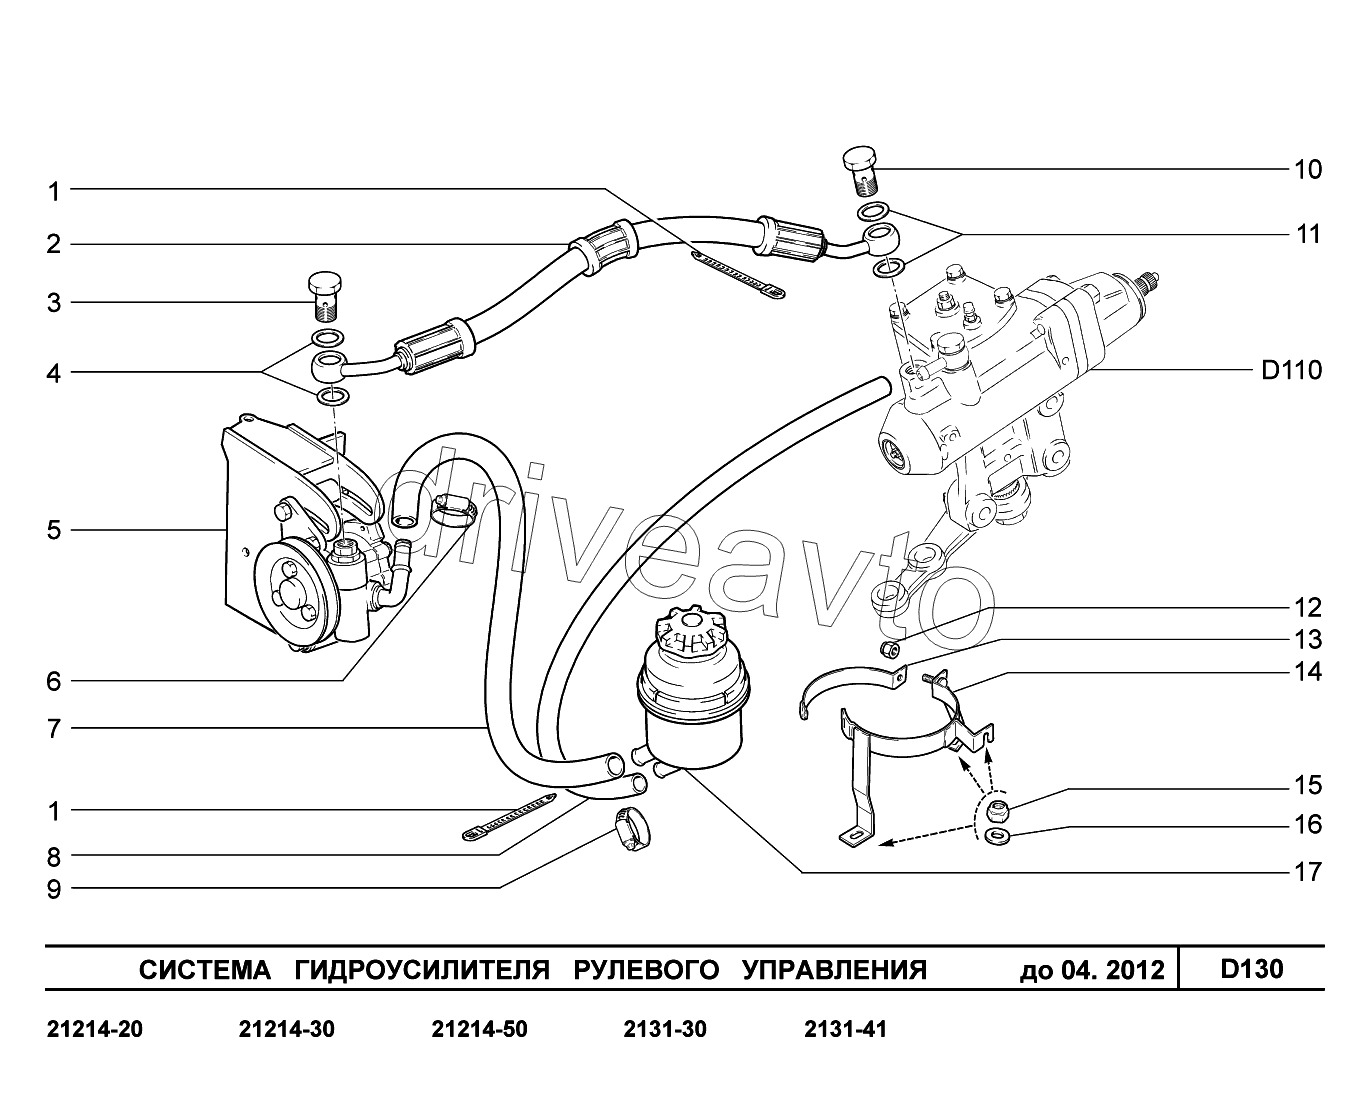 D130. Система гидроусилителя рулевого управления до 04.2012